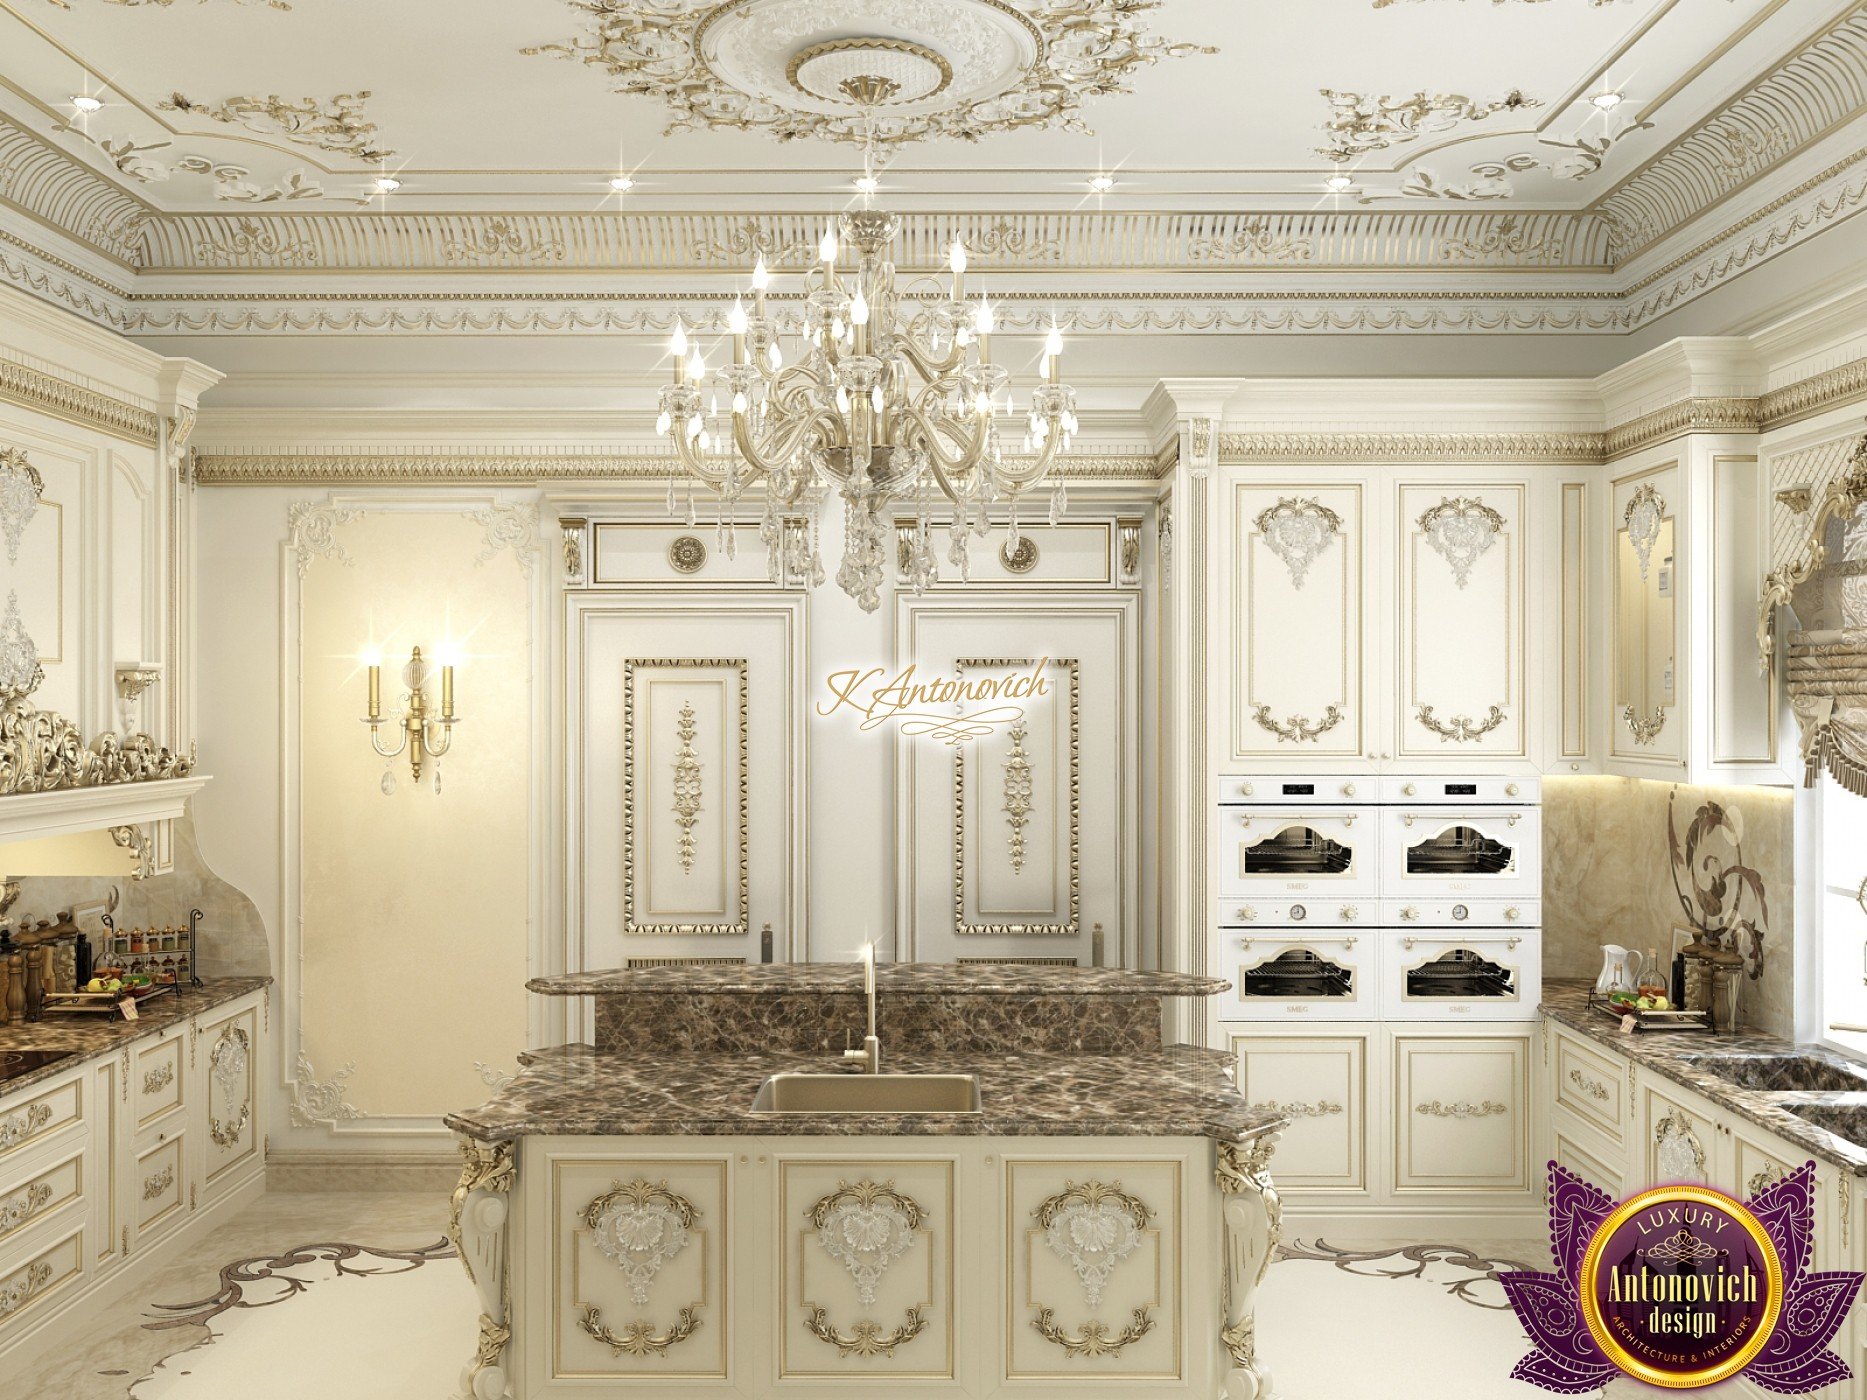 Kitchen Design in Classic Style, Luxury Kitchen Interior Designs